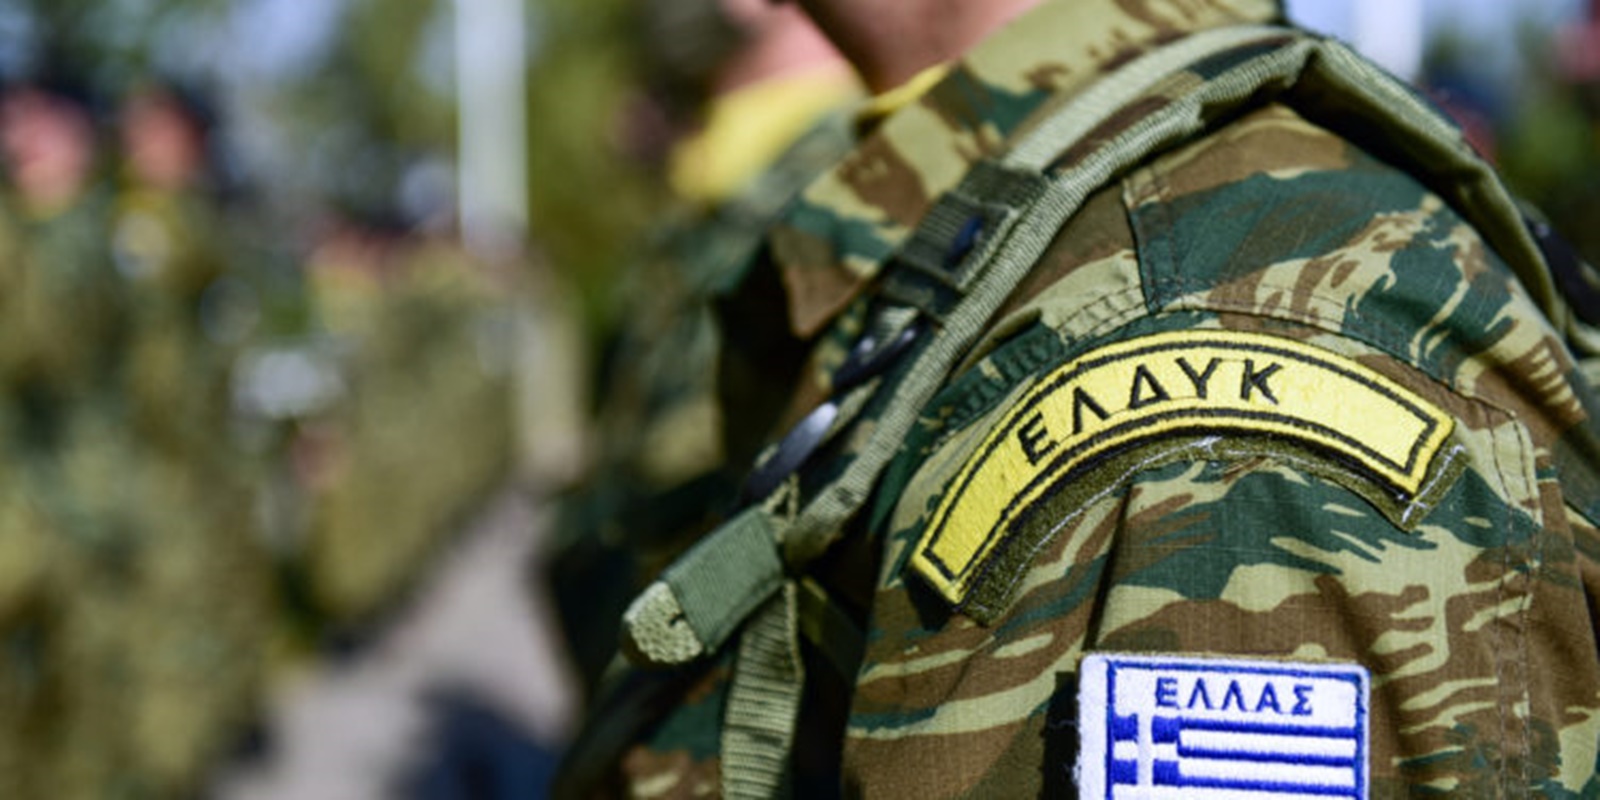 Κύπρος: Εξερράγη εκπαιδευτική χειροβομβίδα στα χέρια Έλληνα στρατιώτη που υπηρετεί στην ΕΛΔΥΚ